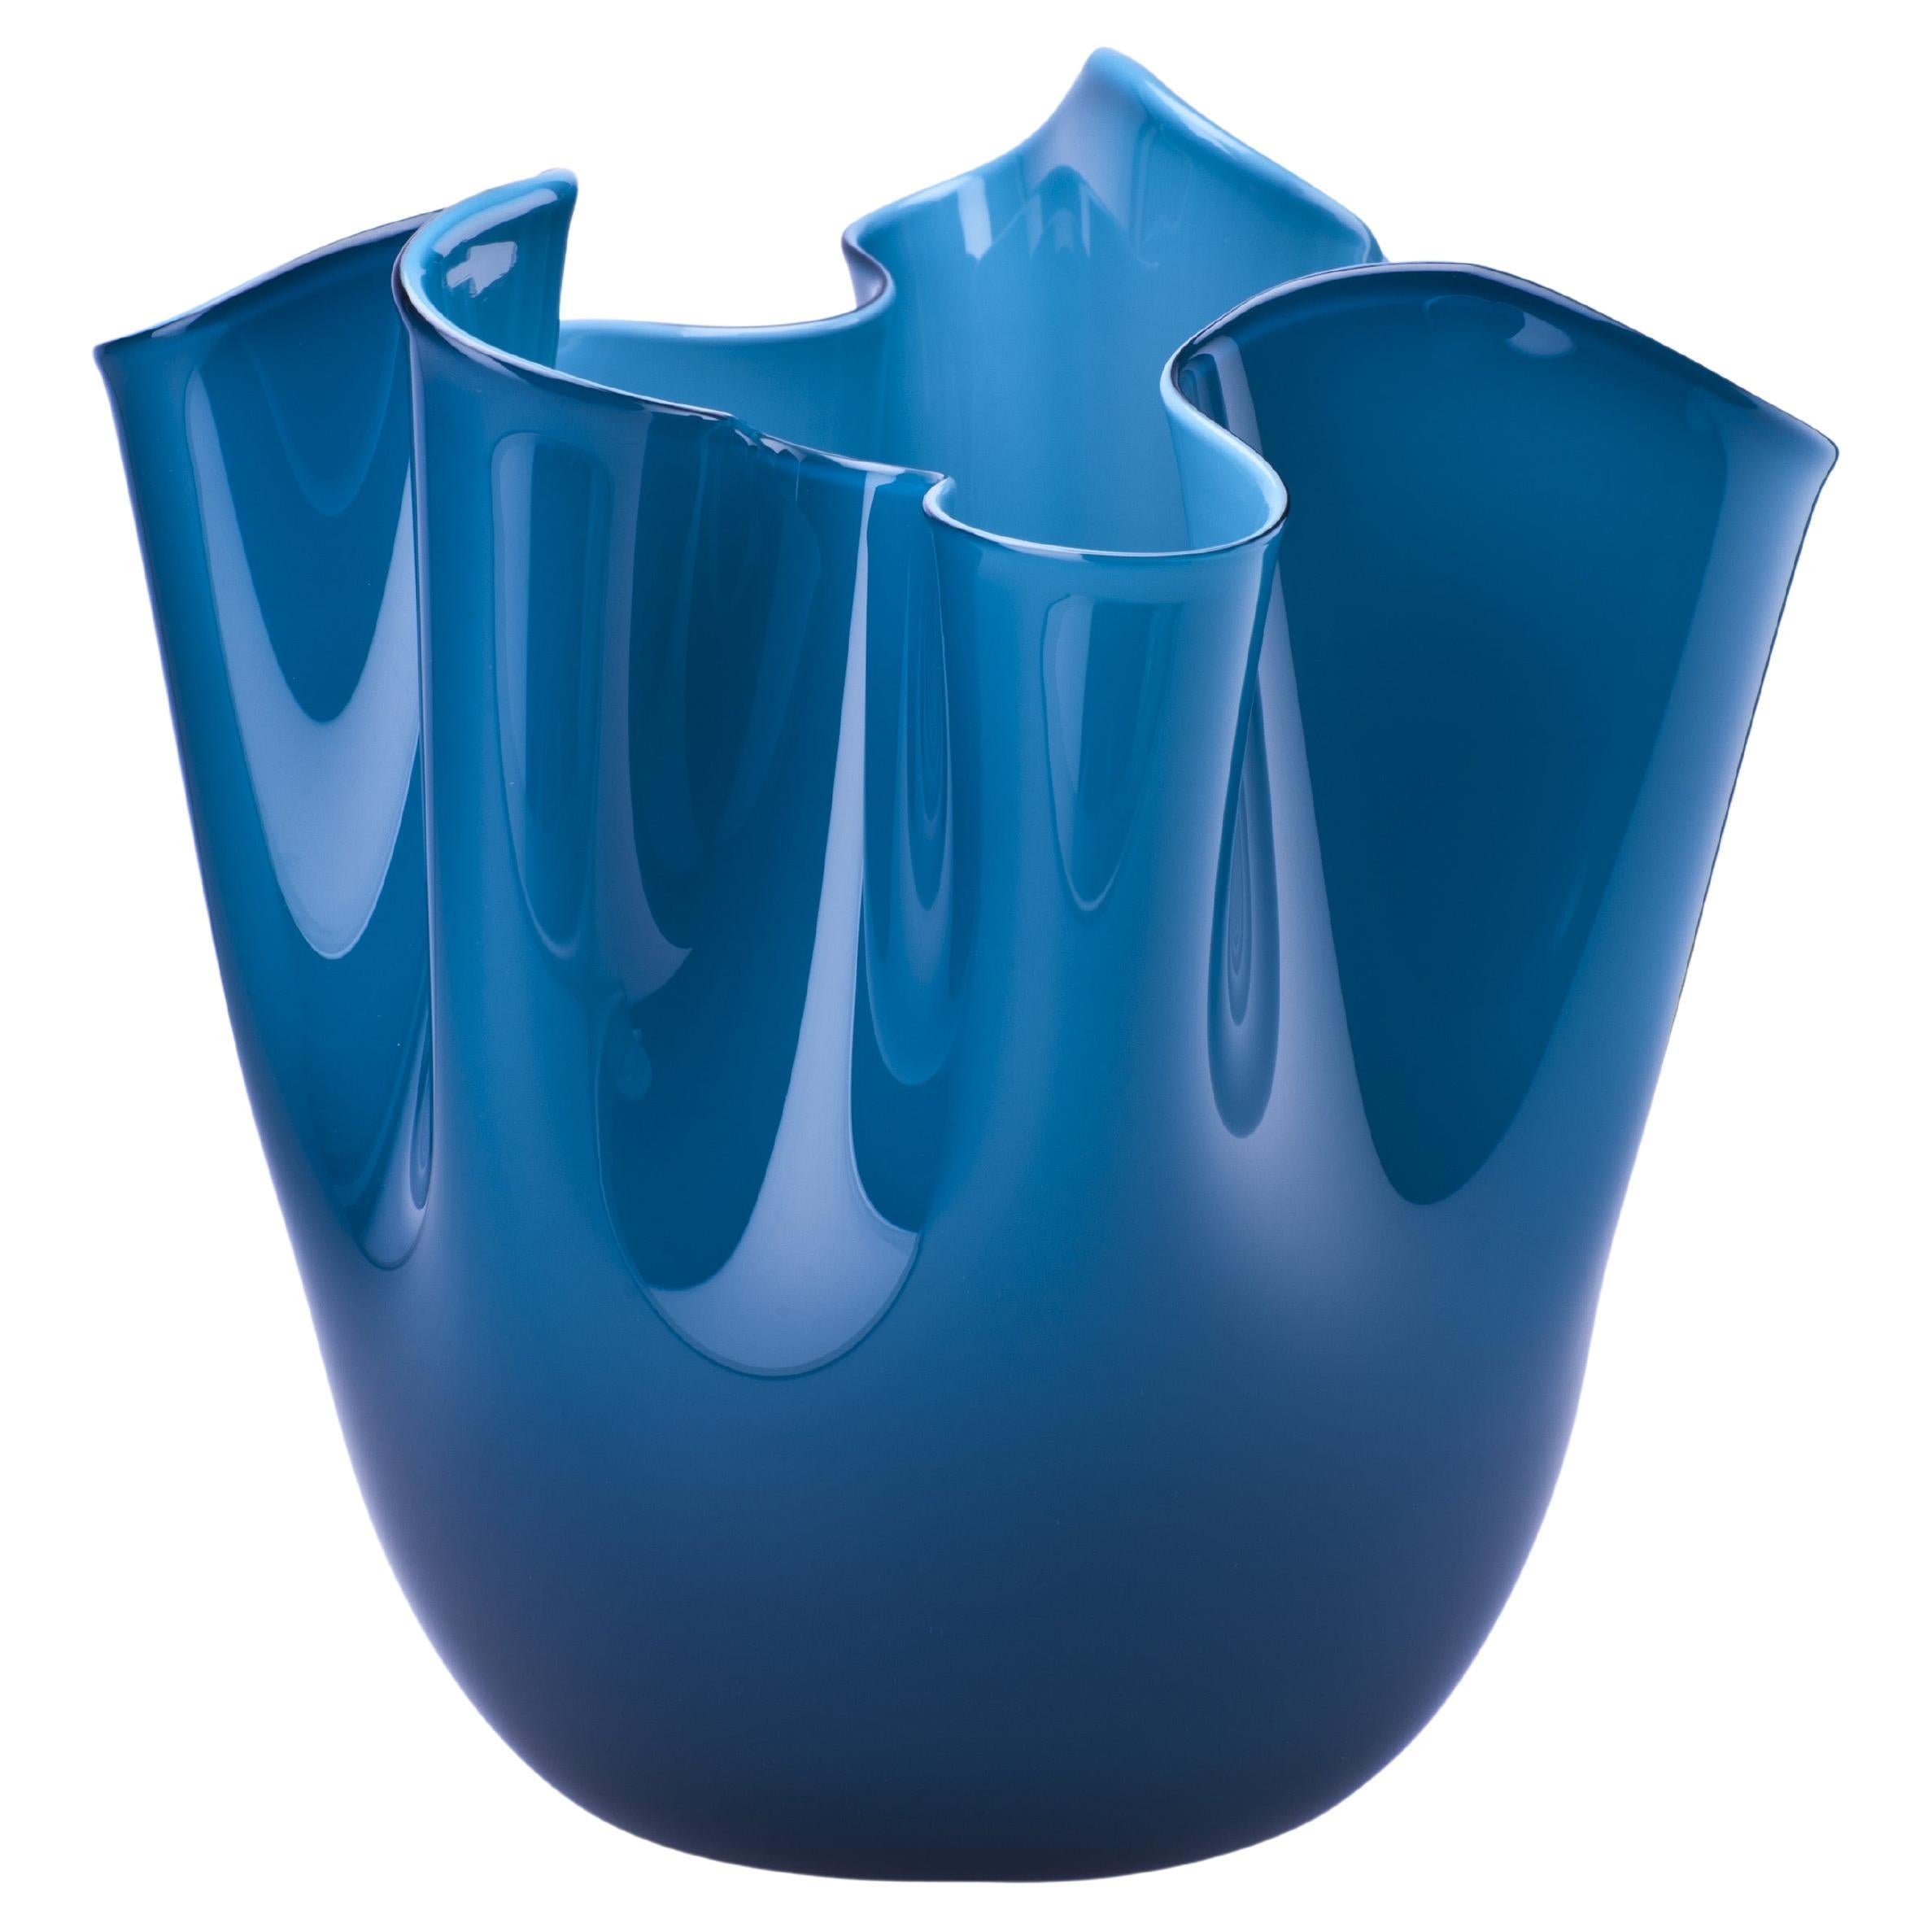 Fazzoletto Opalino Large Glass Vase in Horizon by Fulvio Bianconi and Venini